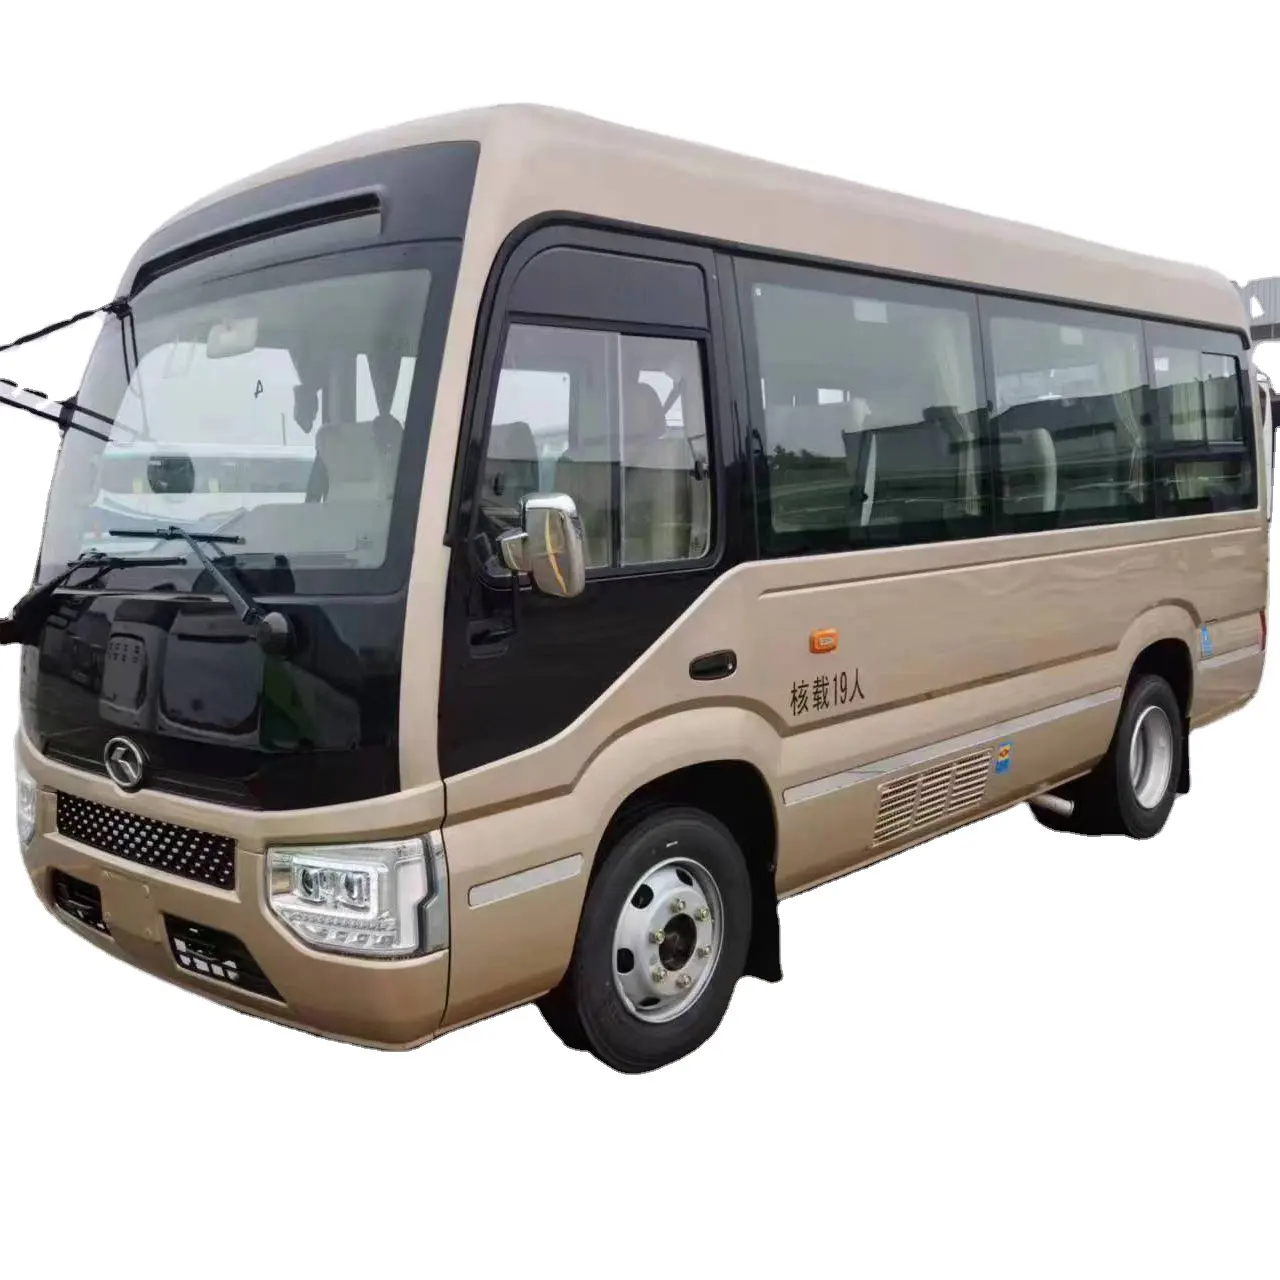 الملك طويل هاو روي مورد كهربائي نقي حافلة EV متر 10-23 مقعد المدربين التخصيص جين حافلة طويلة جديدة